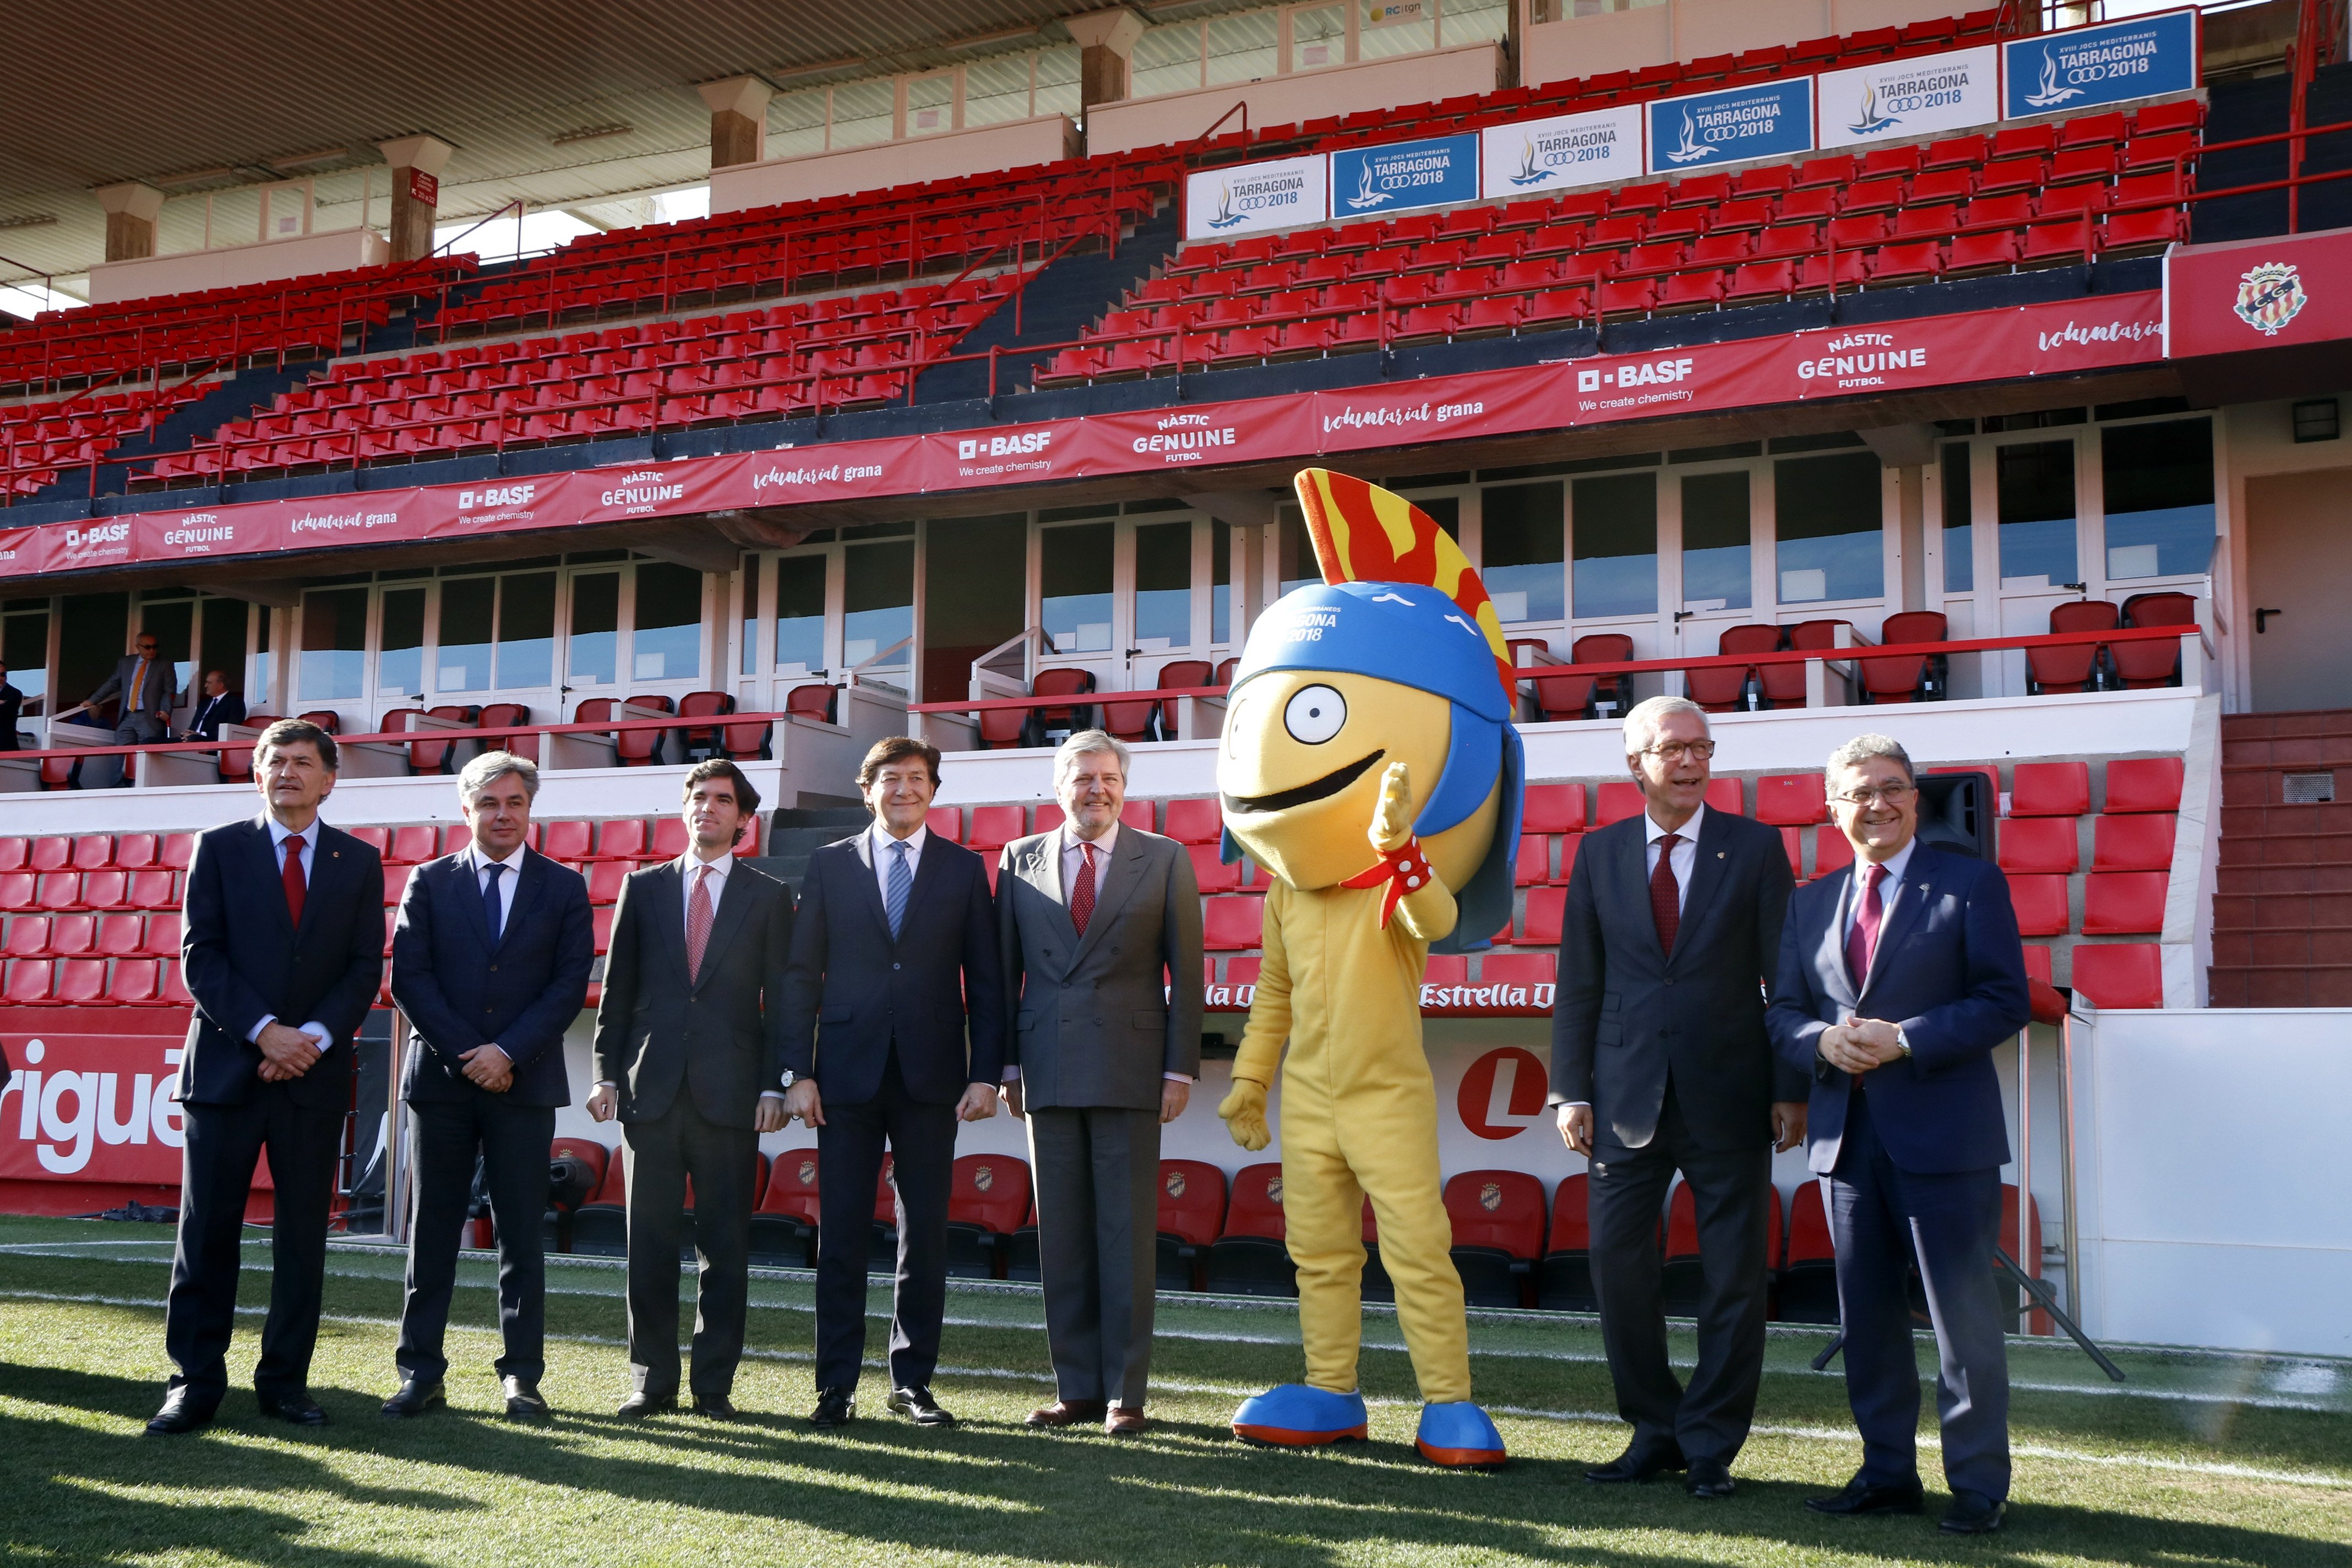 El govern espanyol repartirà visats a la delegació olímpica de Kosovo